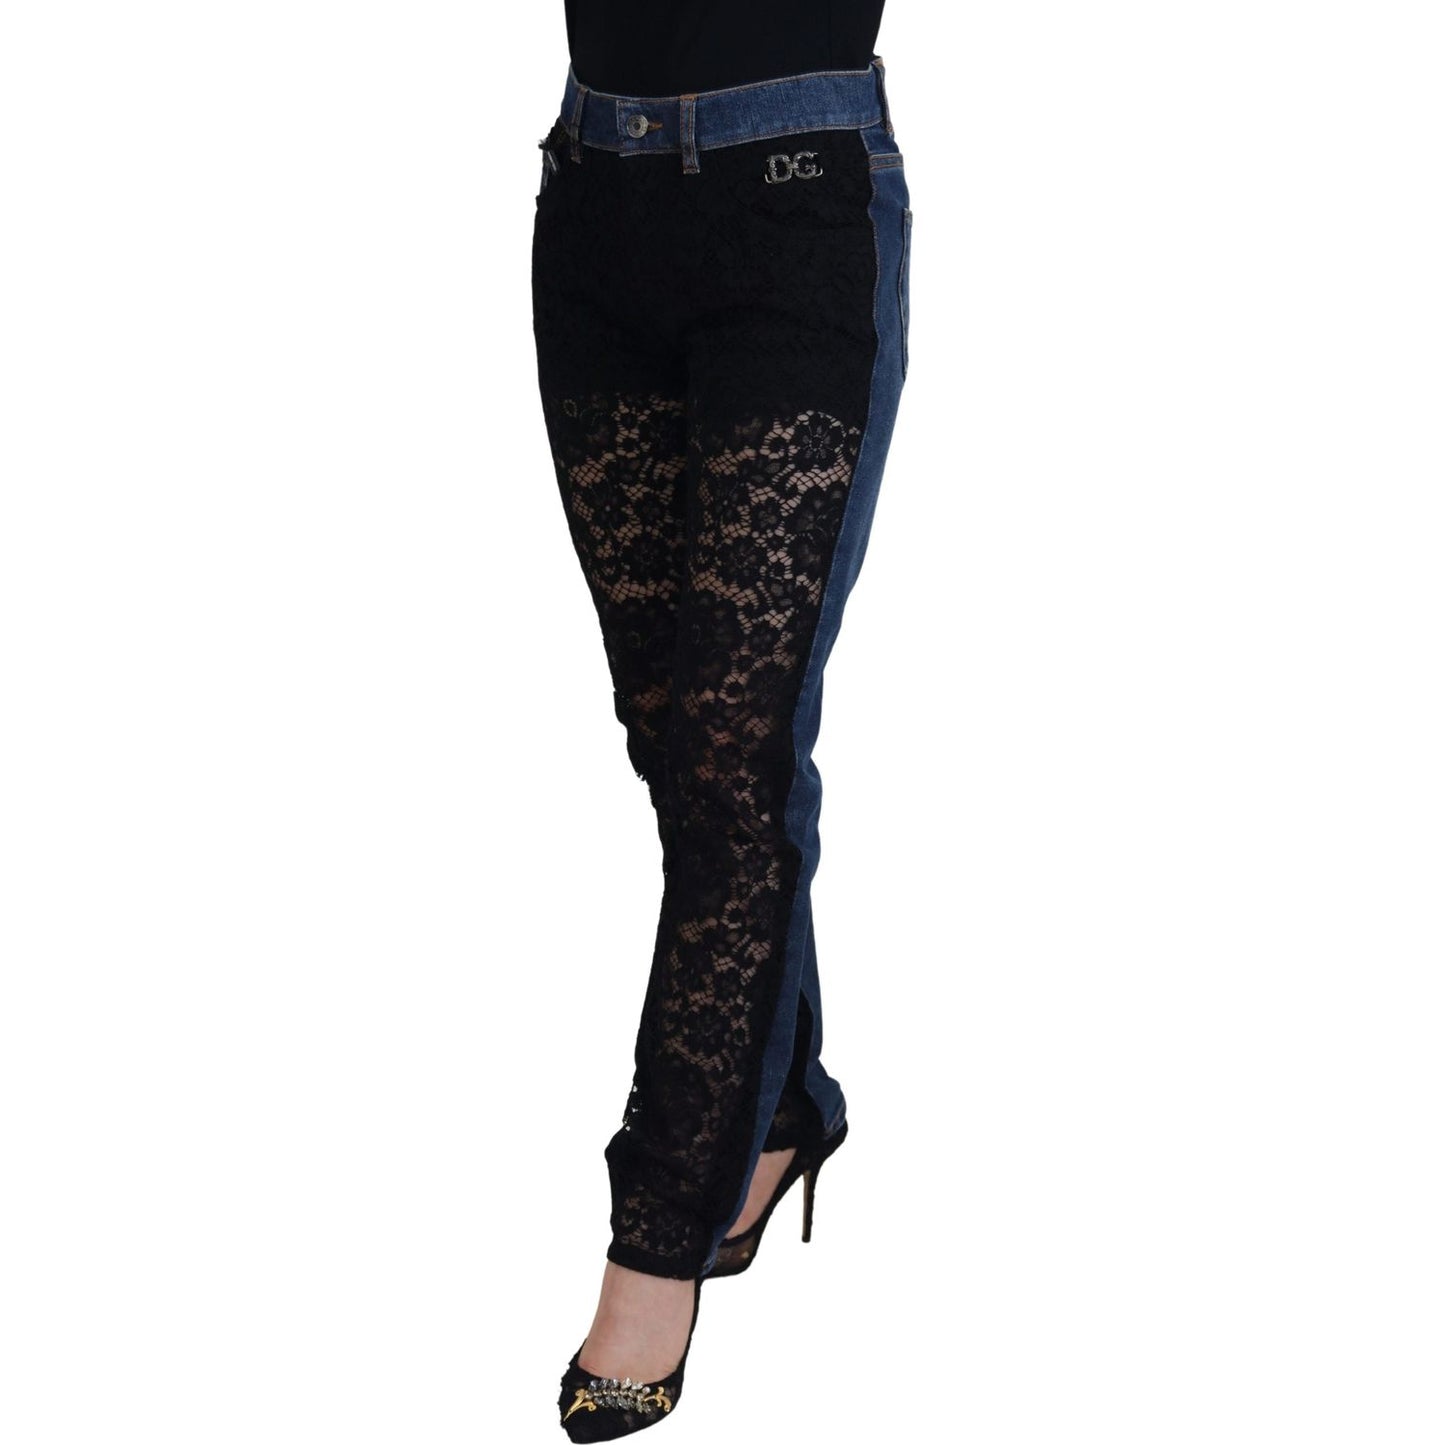 Dolce & Gabbana Elegant Floral Lace Front Denim Jeans & Pants black-floral-lace-front-skinny-denim-jeans